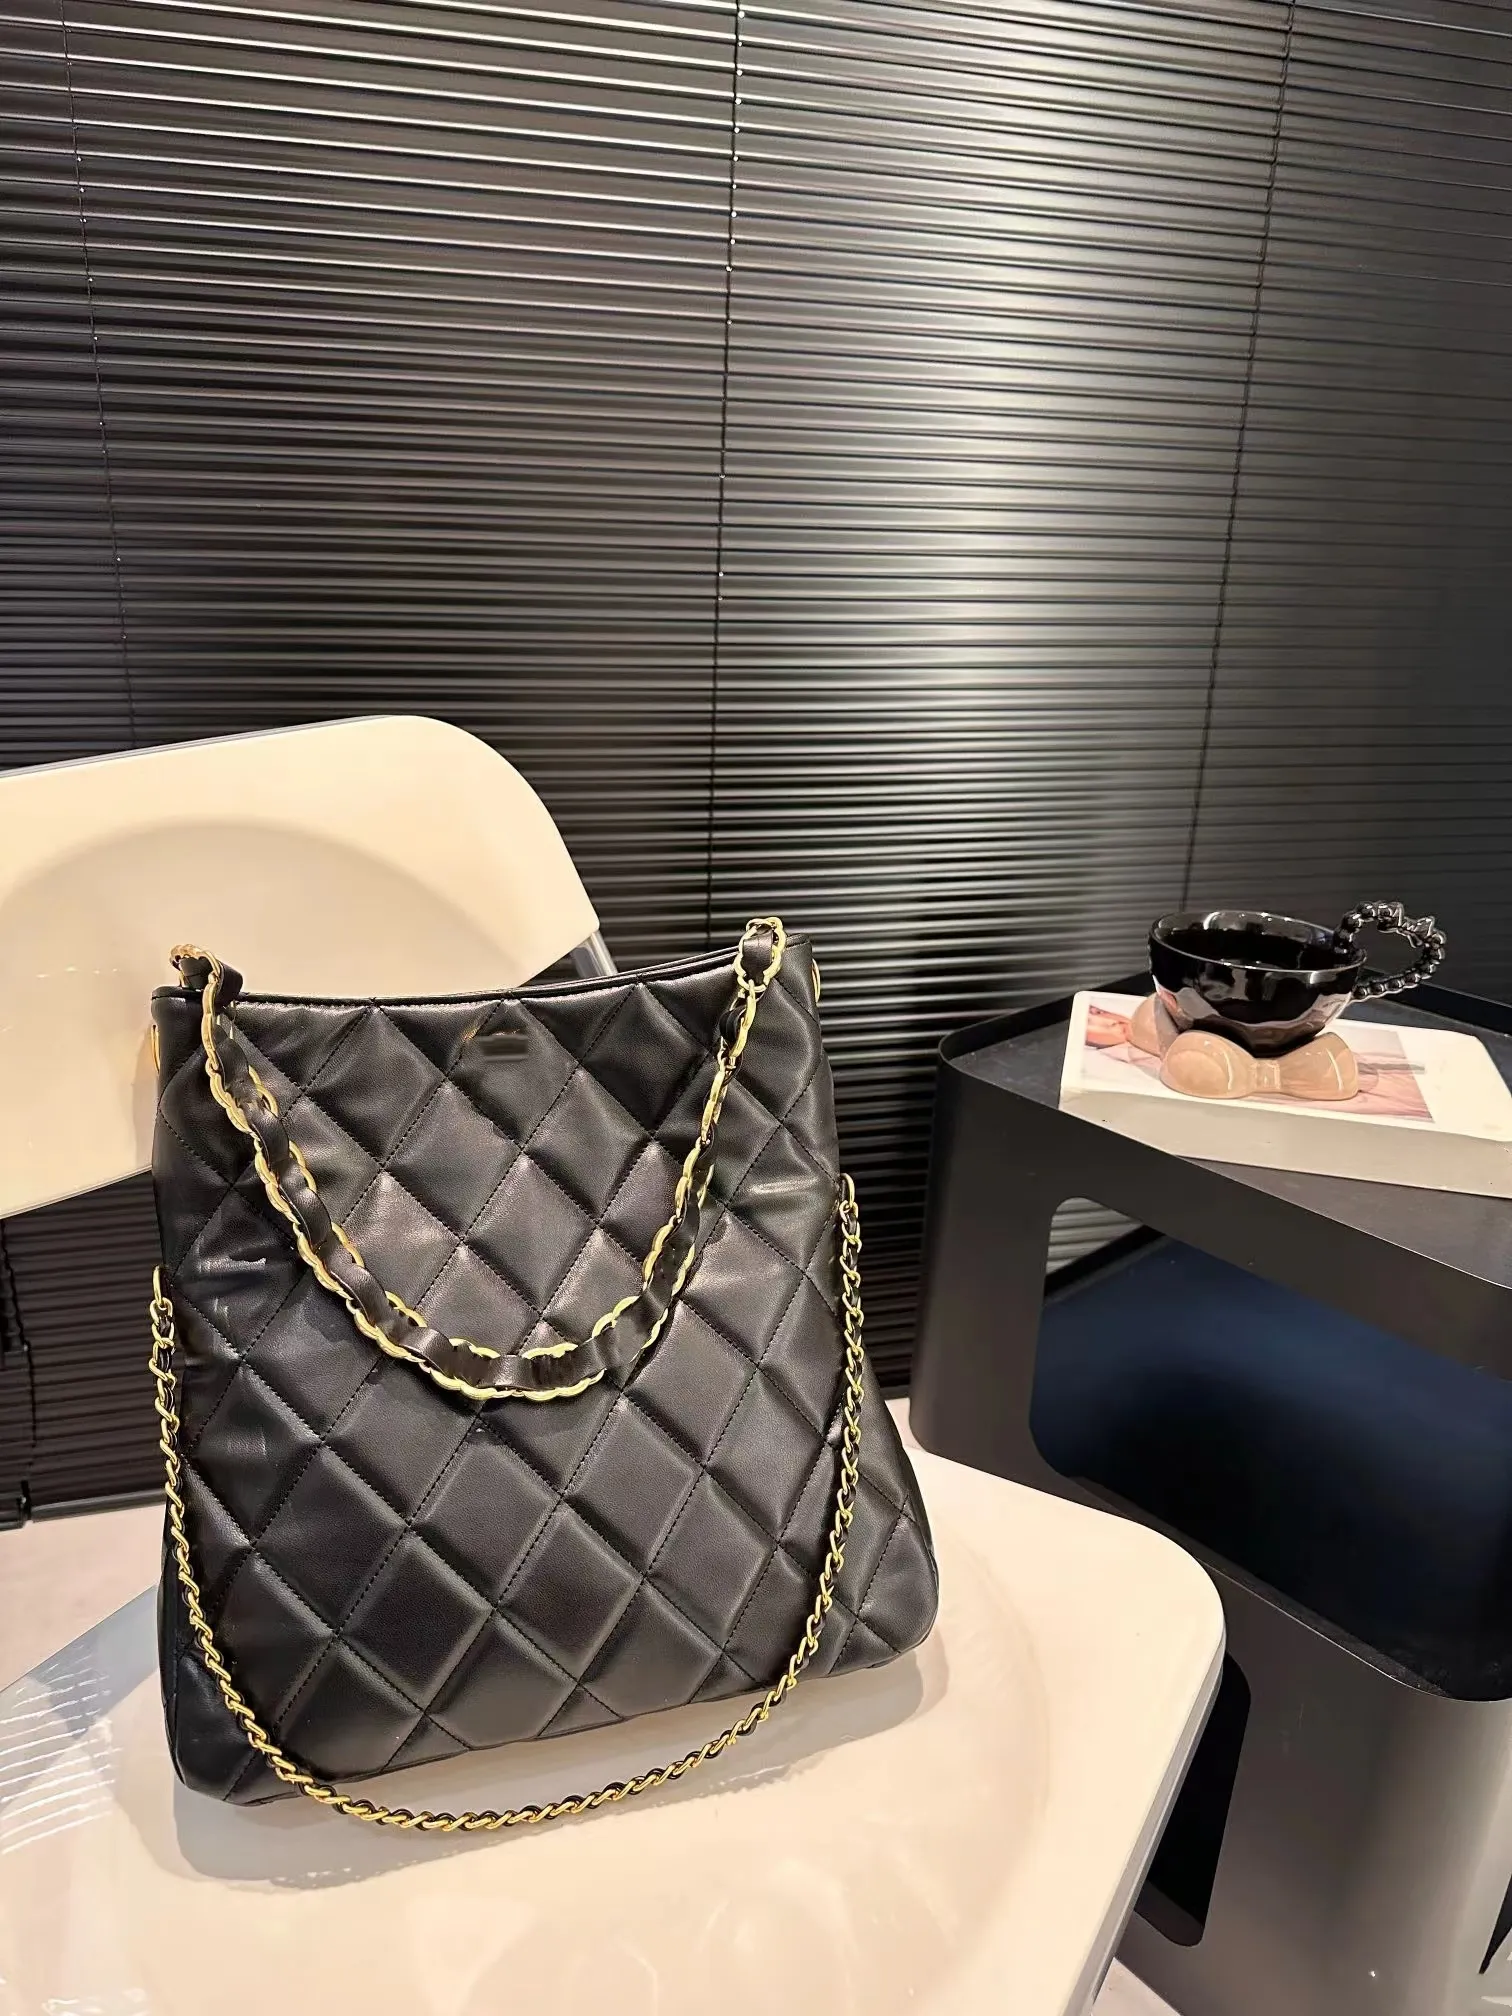 7A Fashion Luxury Design Женская классическая сумка в стиле хиппи Изготовлена из кожи. Эта сумка складывается и образует универсальную сумку через плечо с двумя спинками.